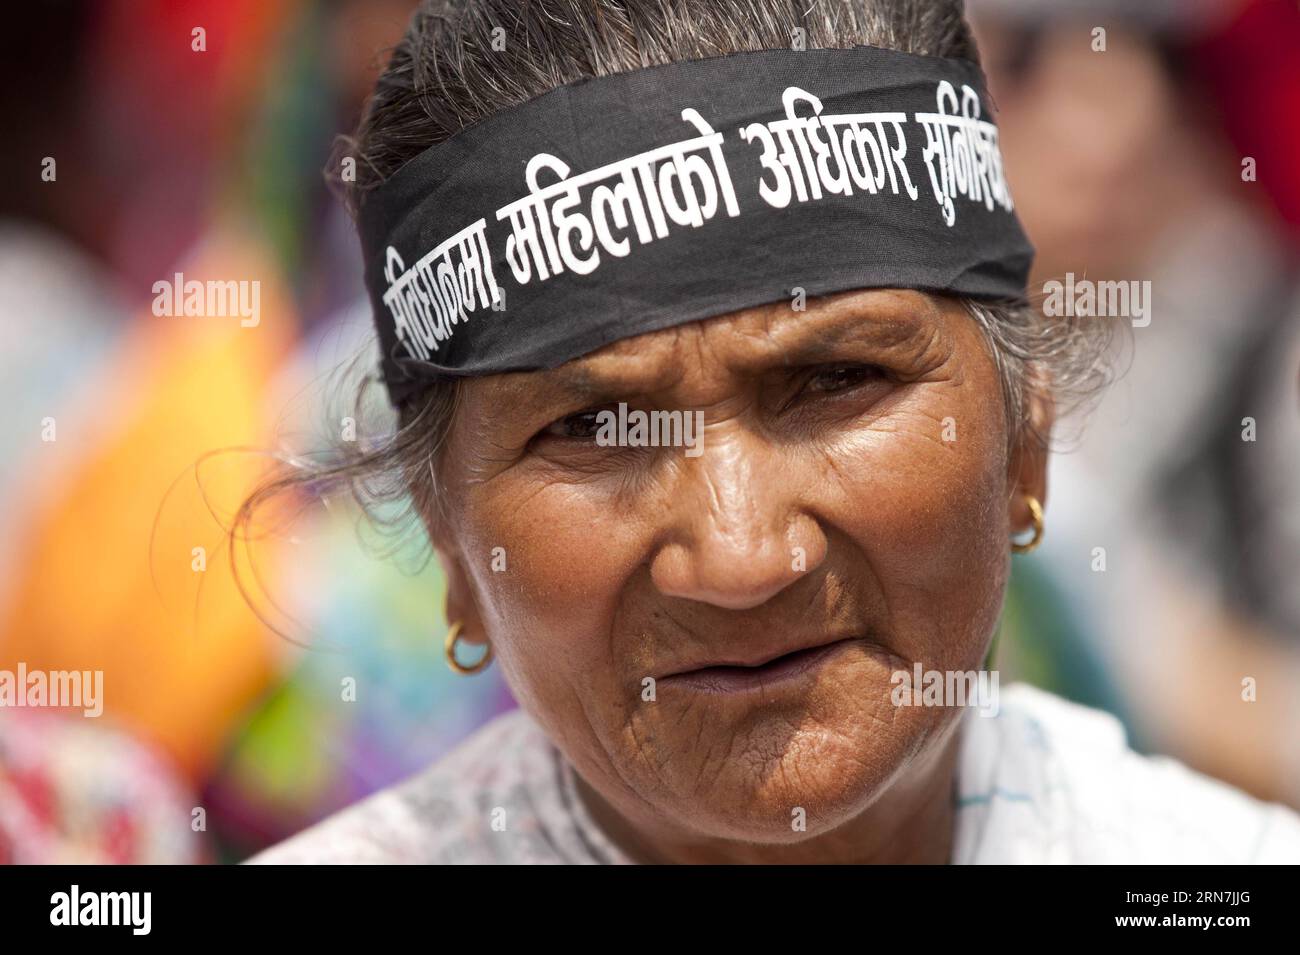 KATHMANDU, 09 settembre 2015 -- Una donna nepalese partecipa a una manifestazione che chiede alle donne pari diritti come uomini nella nuova costituzione proposta a Kathmandu, Nepal, il 9 settembre 2015. )(zhf) NEPAL-KATHMANDU-PROTESTA-DONNE-PARI DIRITTI PratapxThapa PUBLICATIONxNOTxINxCHN Kathmandu settembre 2015 una donna nepalese partecipa a un raduno che chiede alle donne PARI diritti come uomini nella nuova Costituzione proposta a Kathmandu Nepal IL 9 settembre 2015 zhf Nepal Kathmandu protesta Women EQUAL Rights PratapxThapa PUBLICATIONXNOTxINxCHN Foto Stock